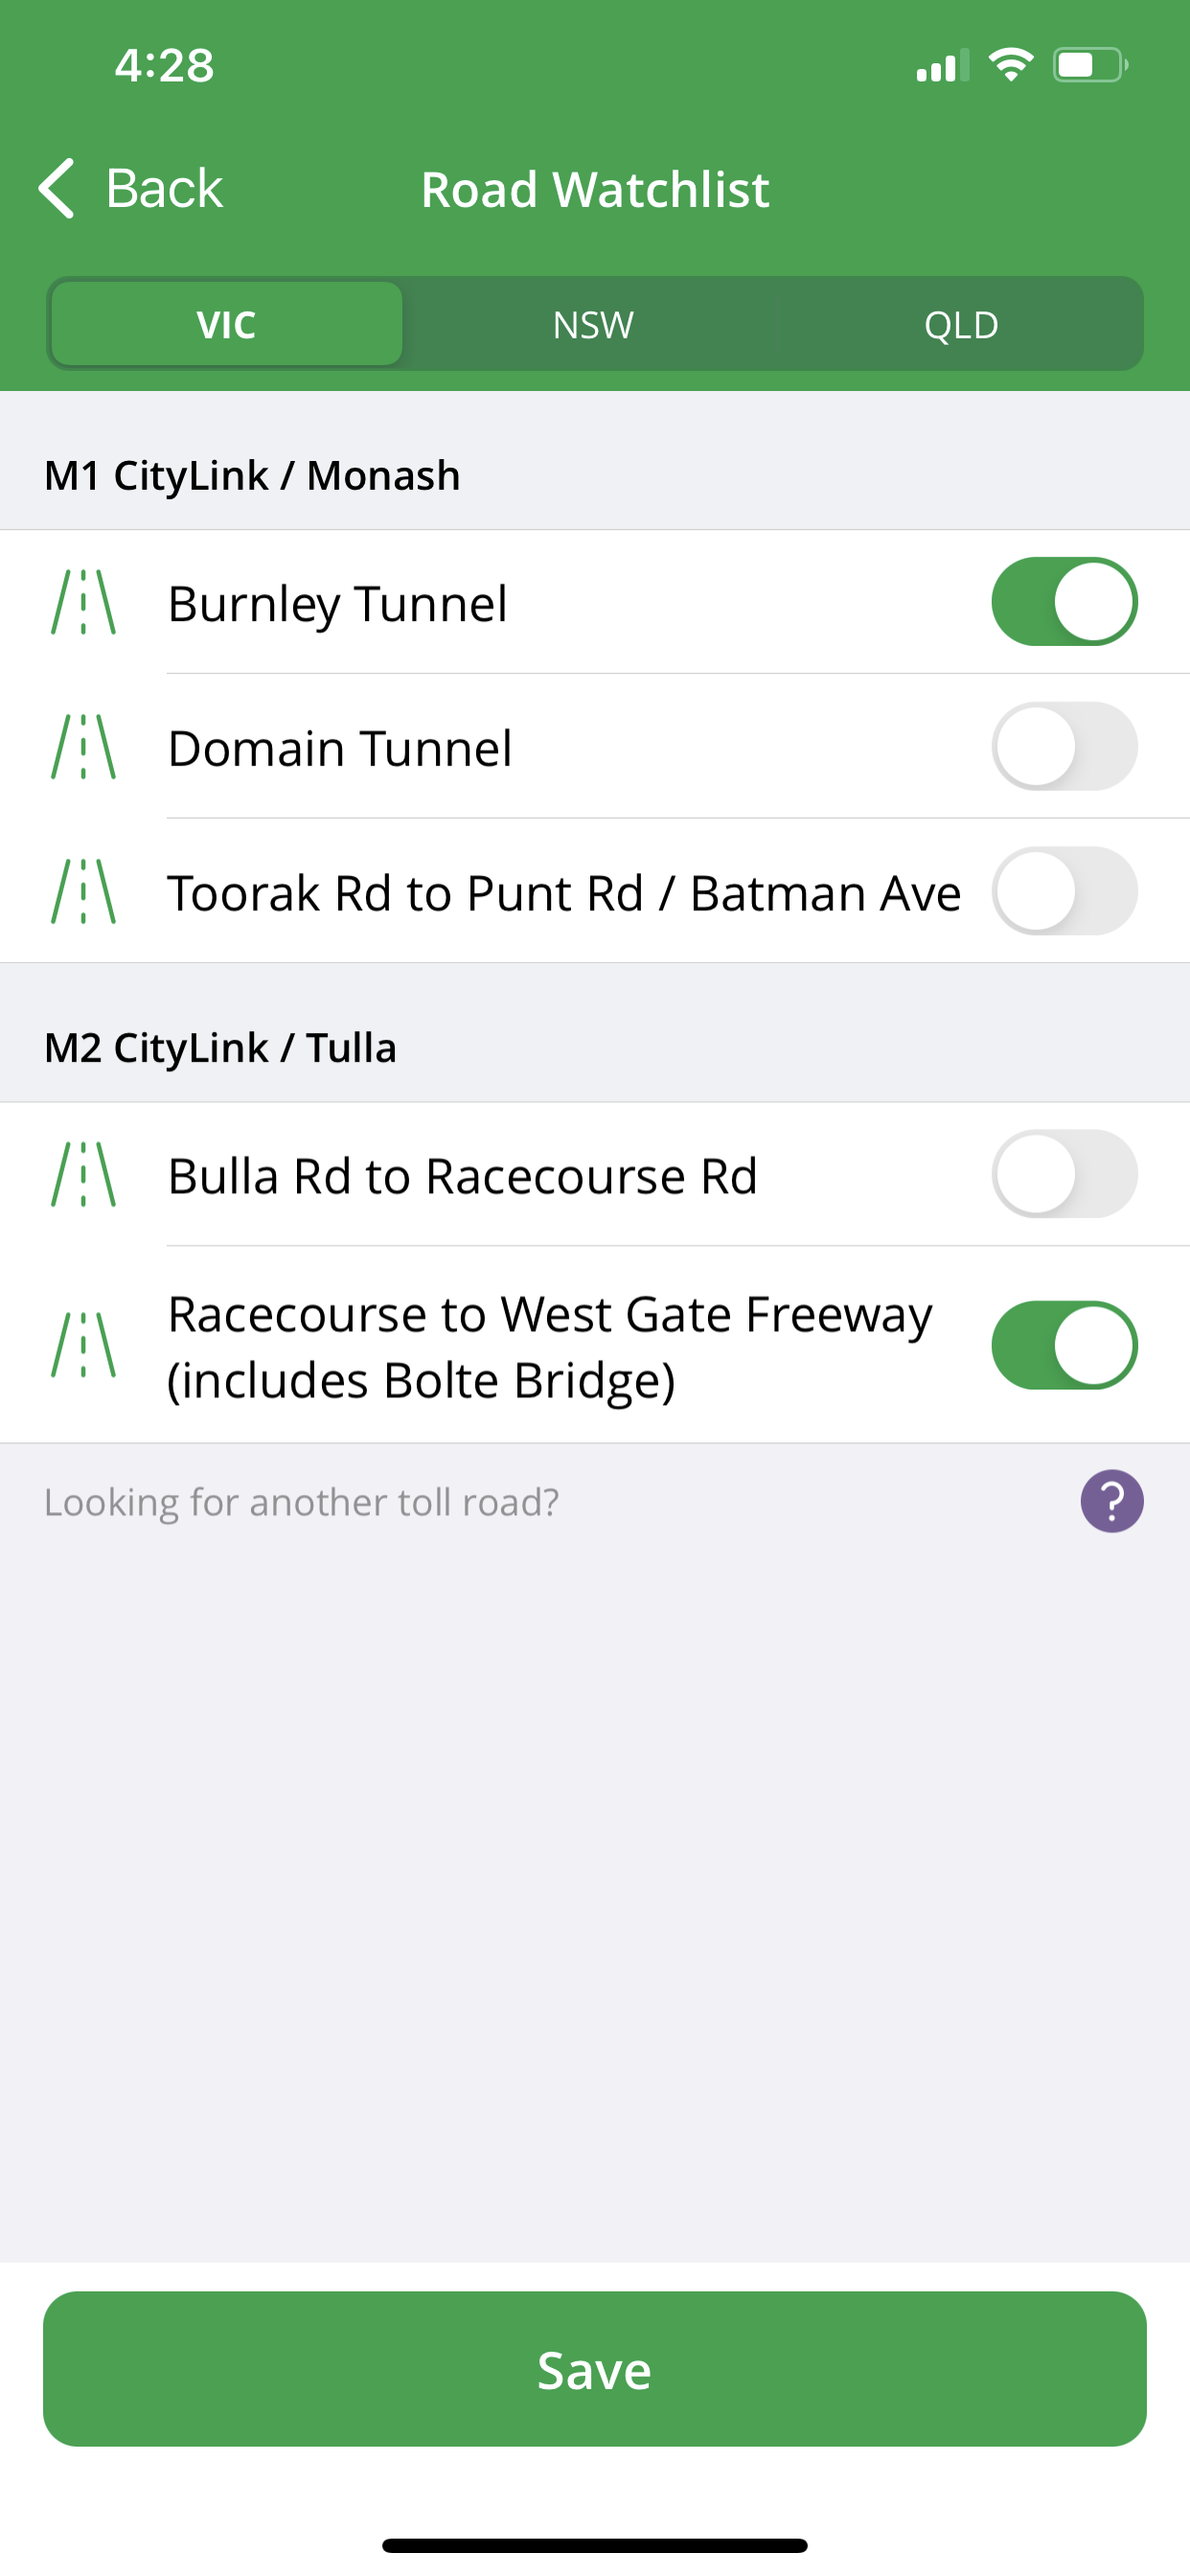 Roads watchlist screen on Linkt app